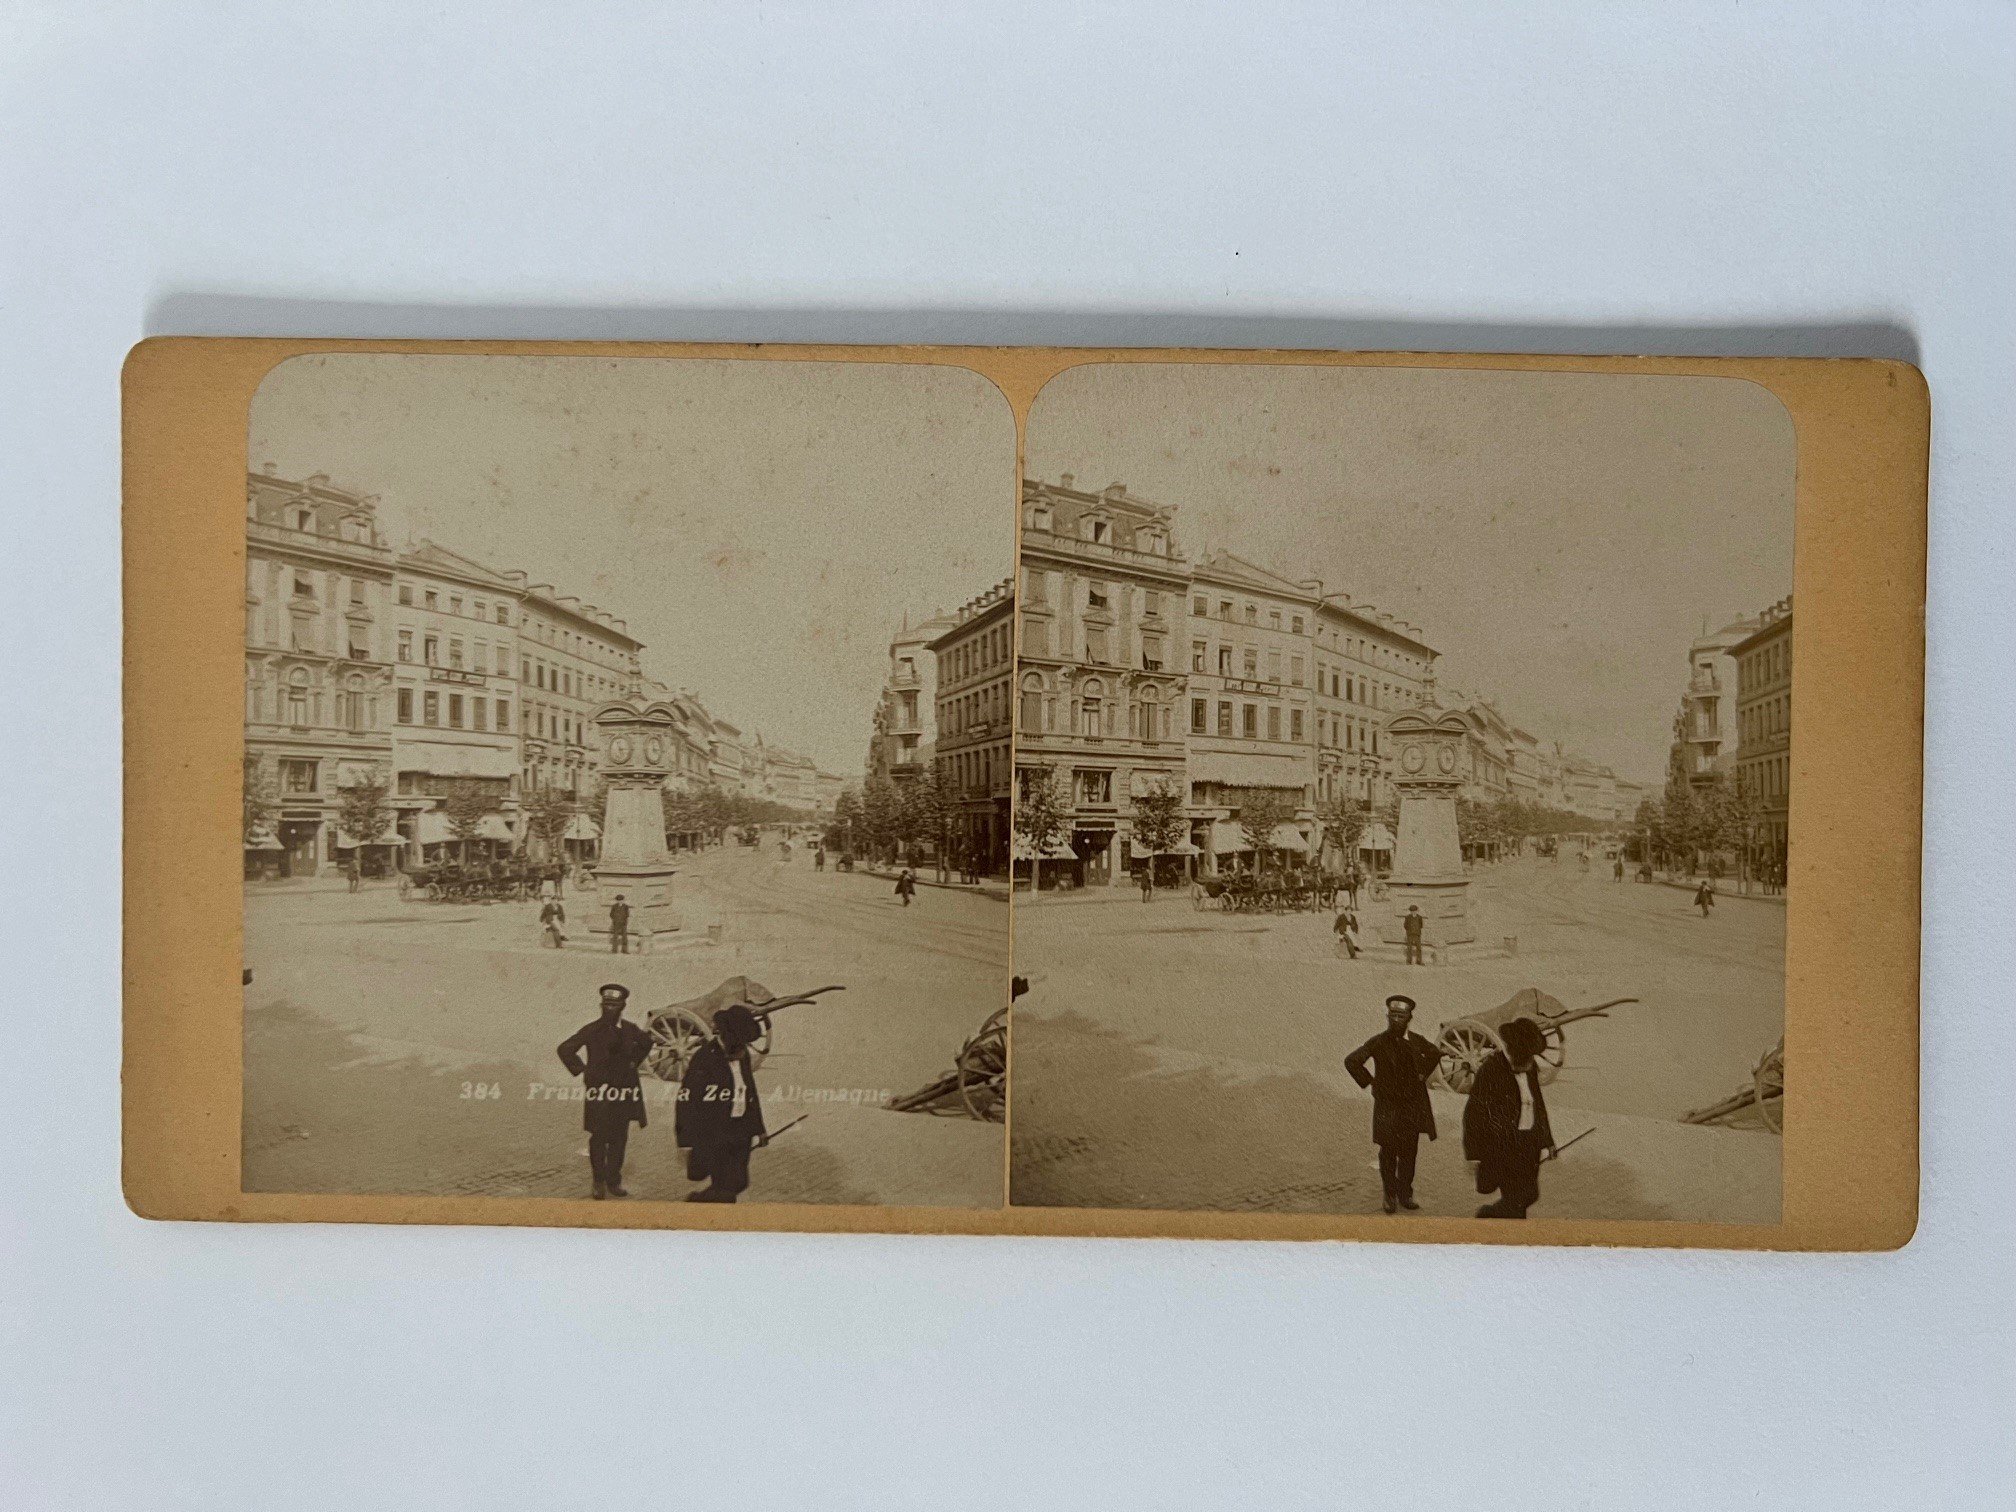 Stereobild, Unbekannter Fotograf, Frankfurt, Zeil, ca. 1900. (Taunus-Rhein-Main - Regionalgeschichtliche Sammlung Dr. Stefan Naas CC BY-NC-SA)